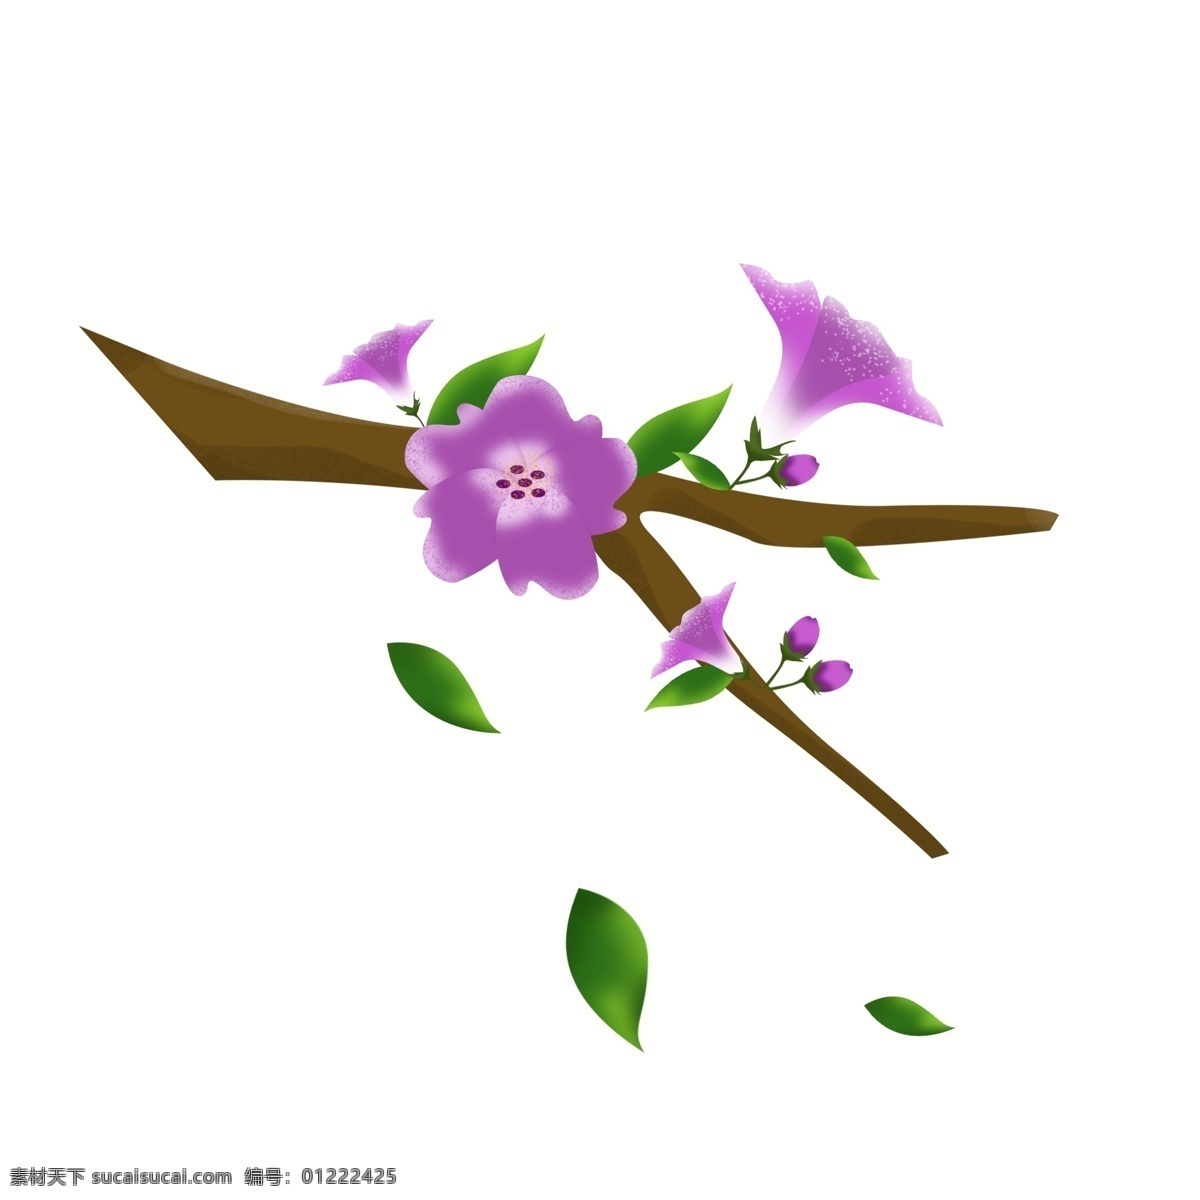 春天 元素 紫色 花朵 花枝 花卉 绿叶 手绘 简约 风 紫色花朵 春天元素 手绘风